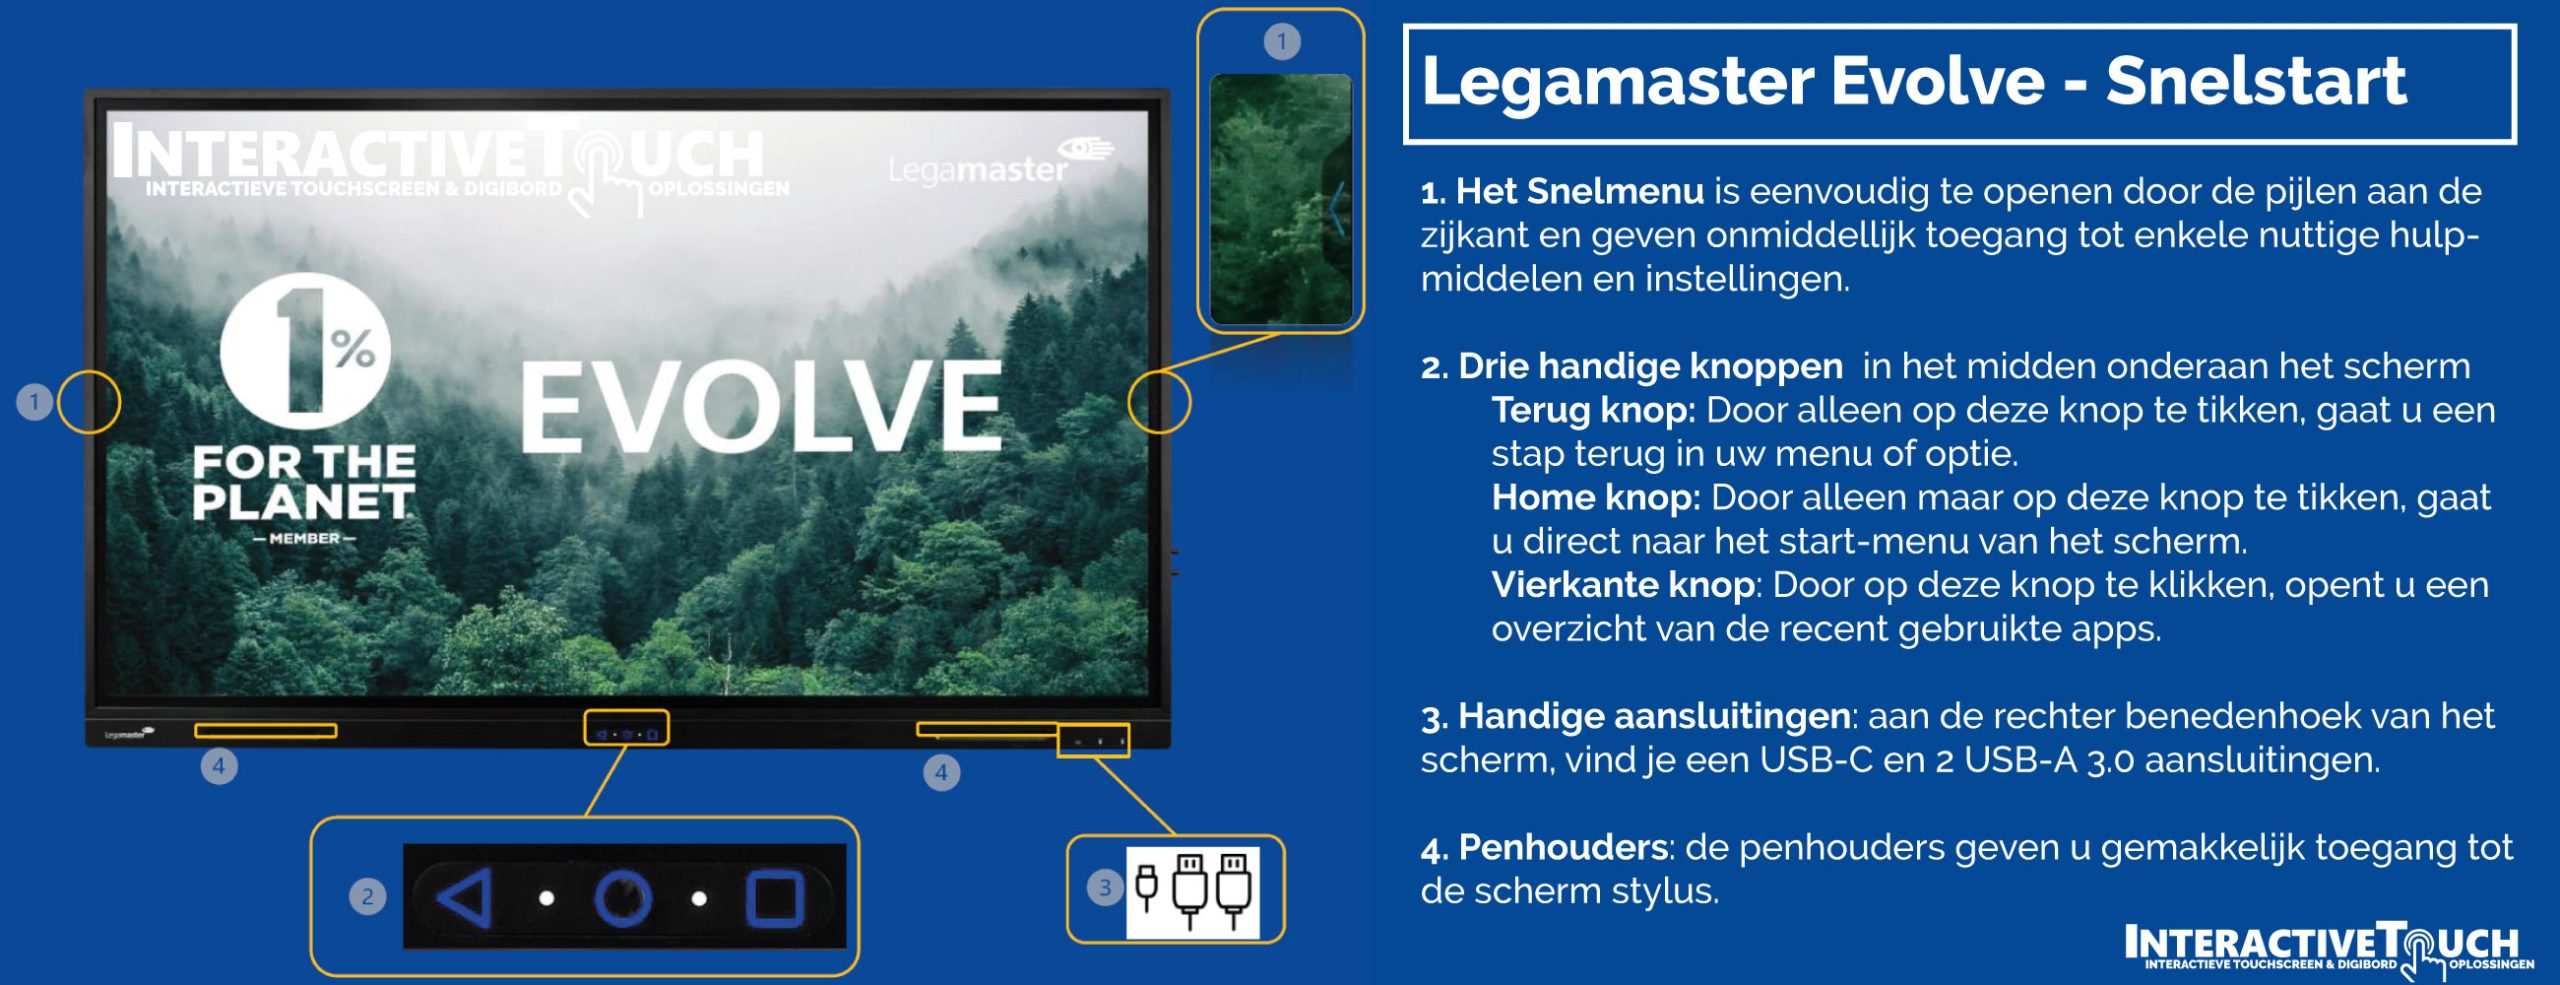 Legamaster-Evolve-how-to-Interactivetouch-legamaster-kopen-achter-fr-nl